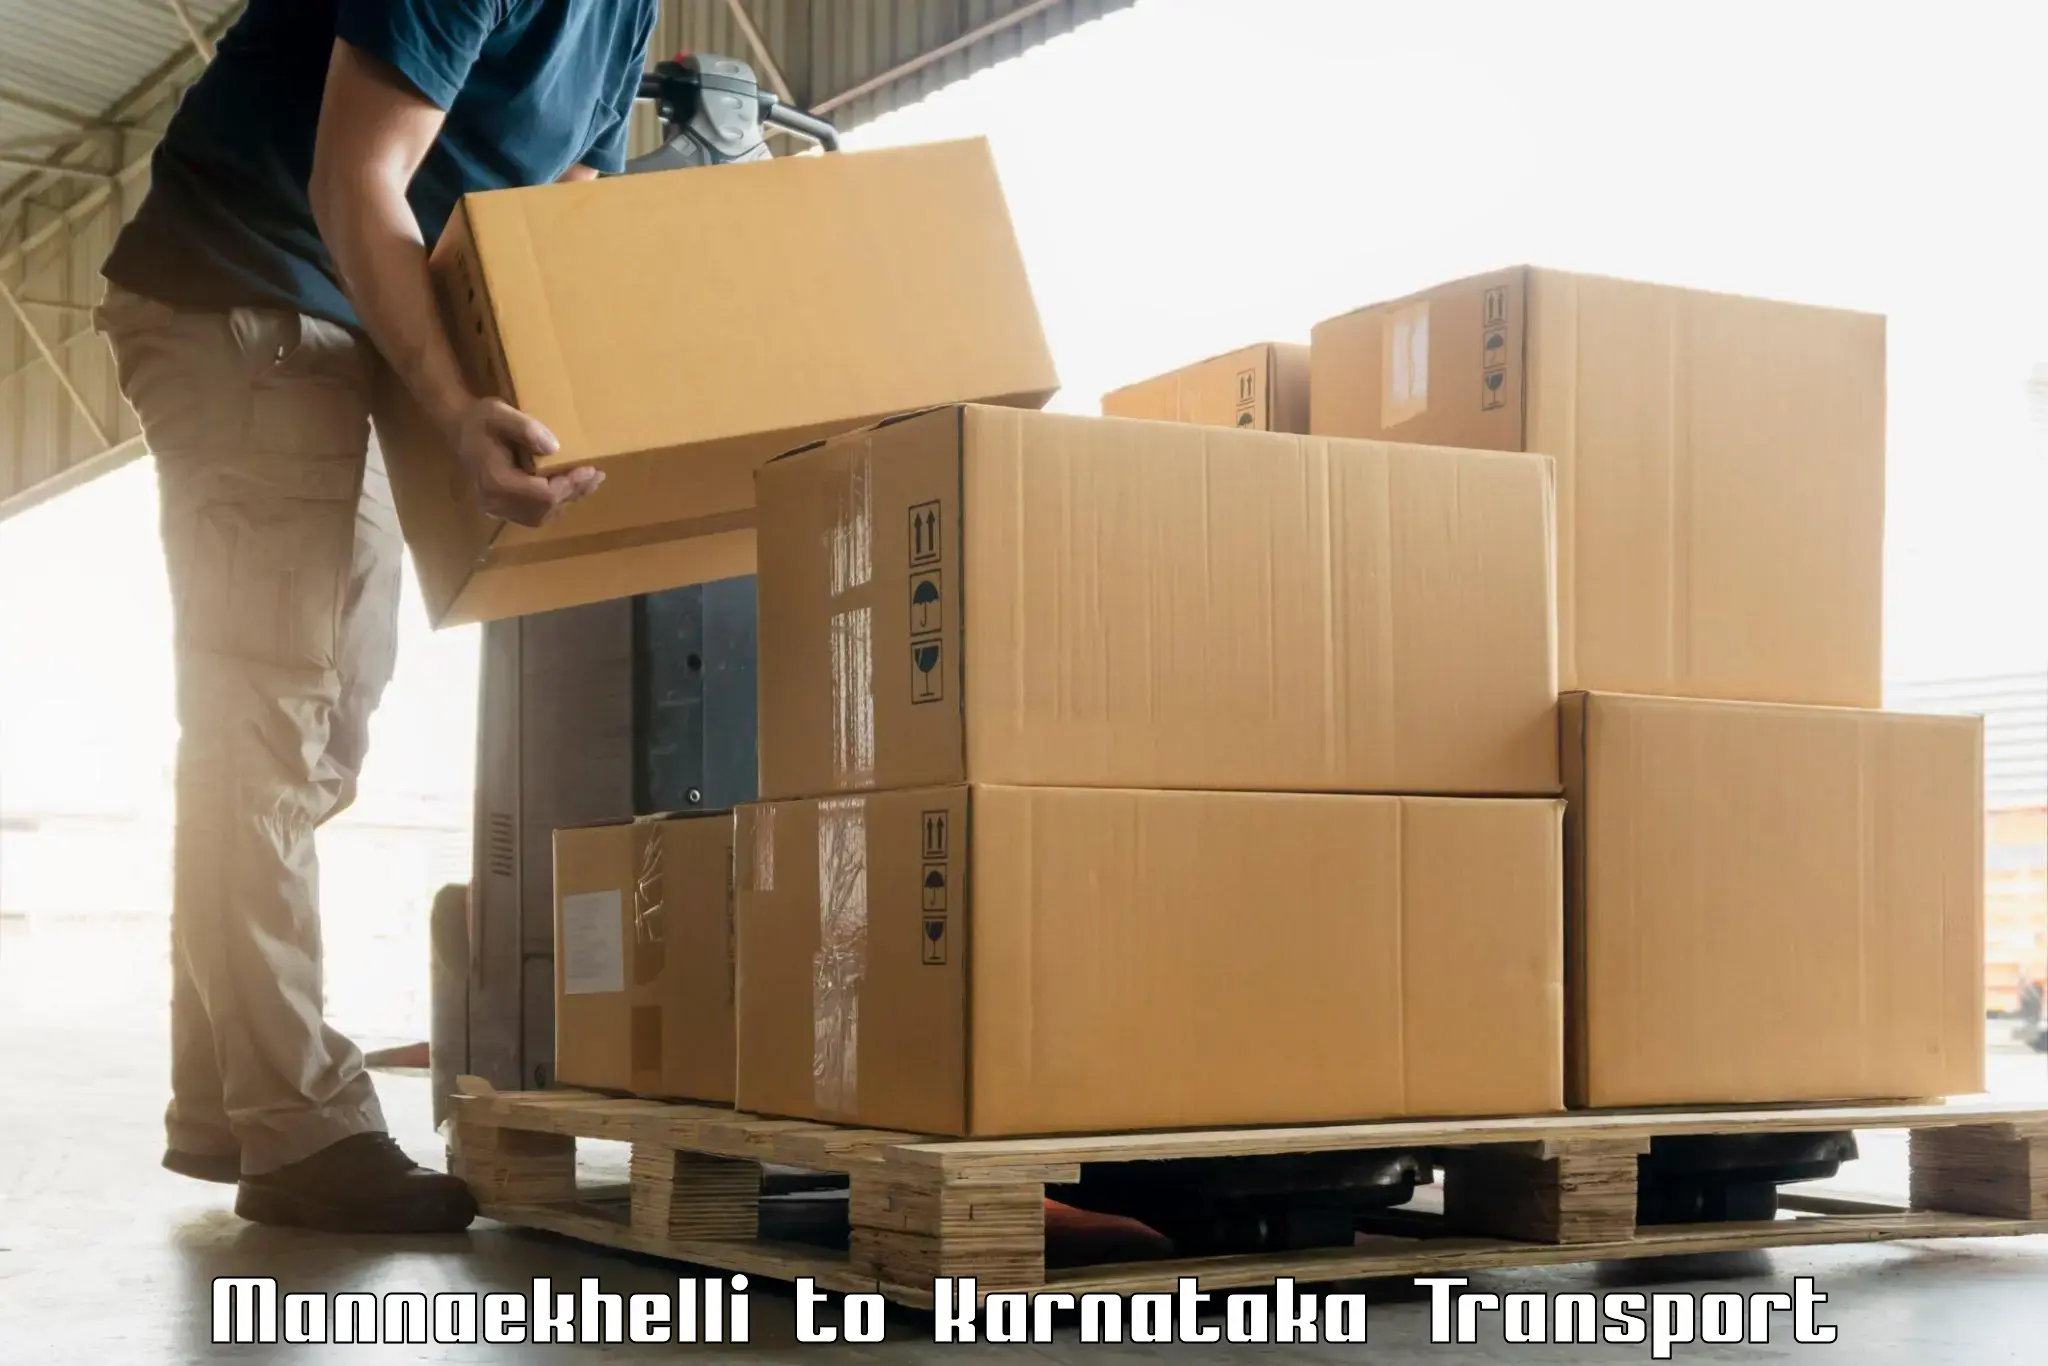 Vehicle parcel service Mannaekhelli to Shimoga